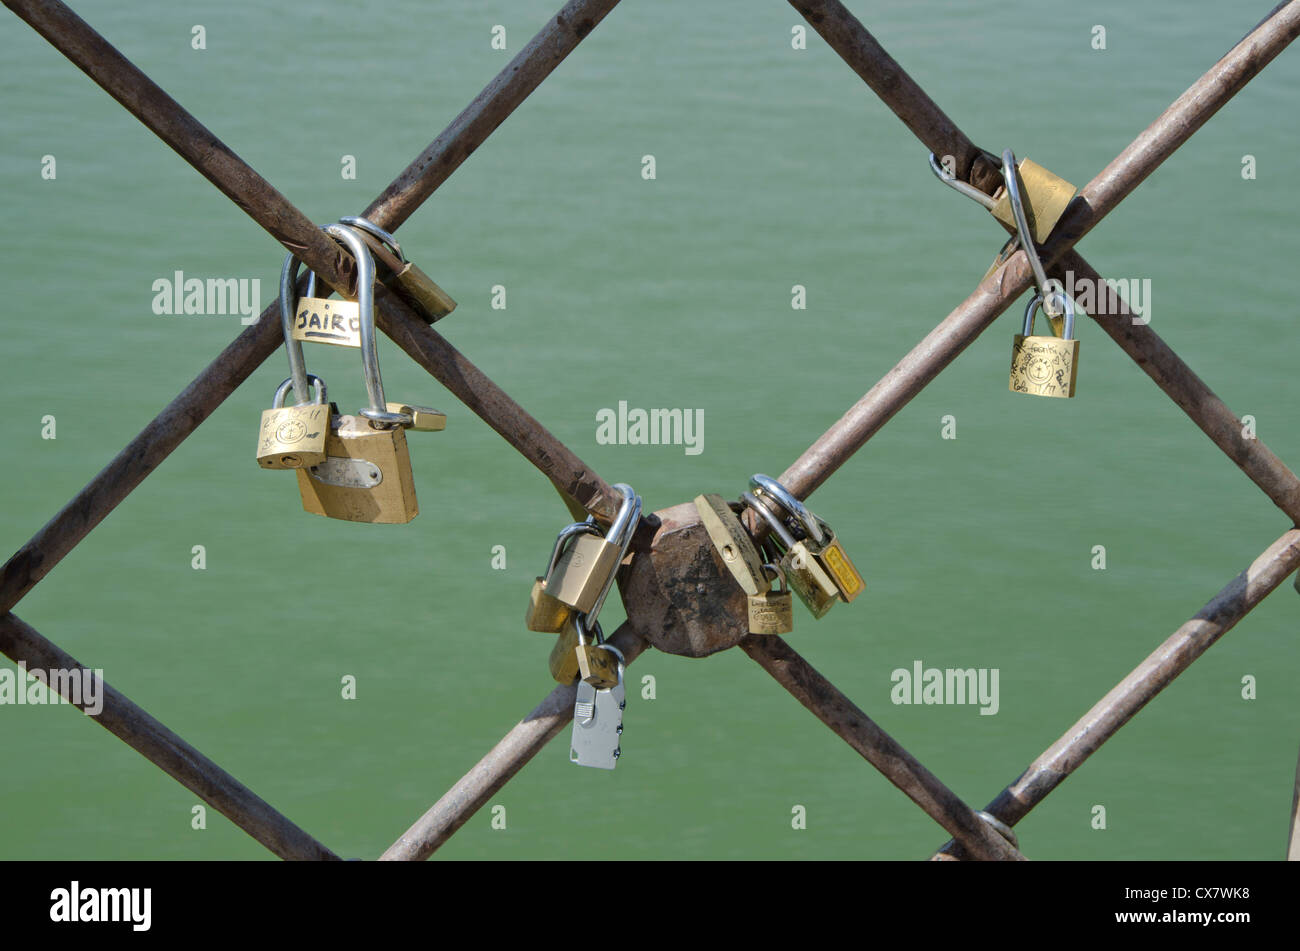 Love locks or padlocks on a bridge in Seville, Spain. Stock Photo